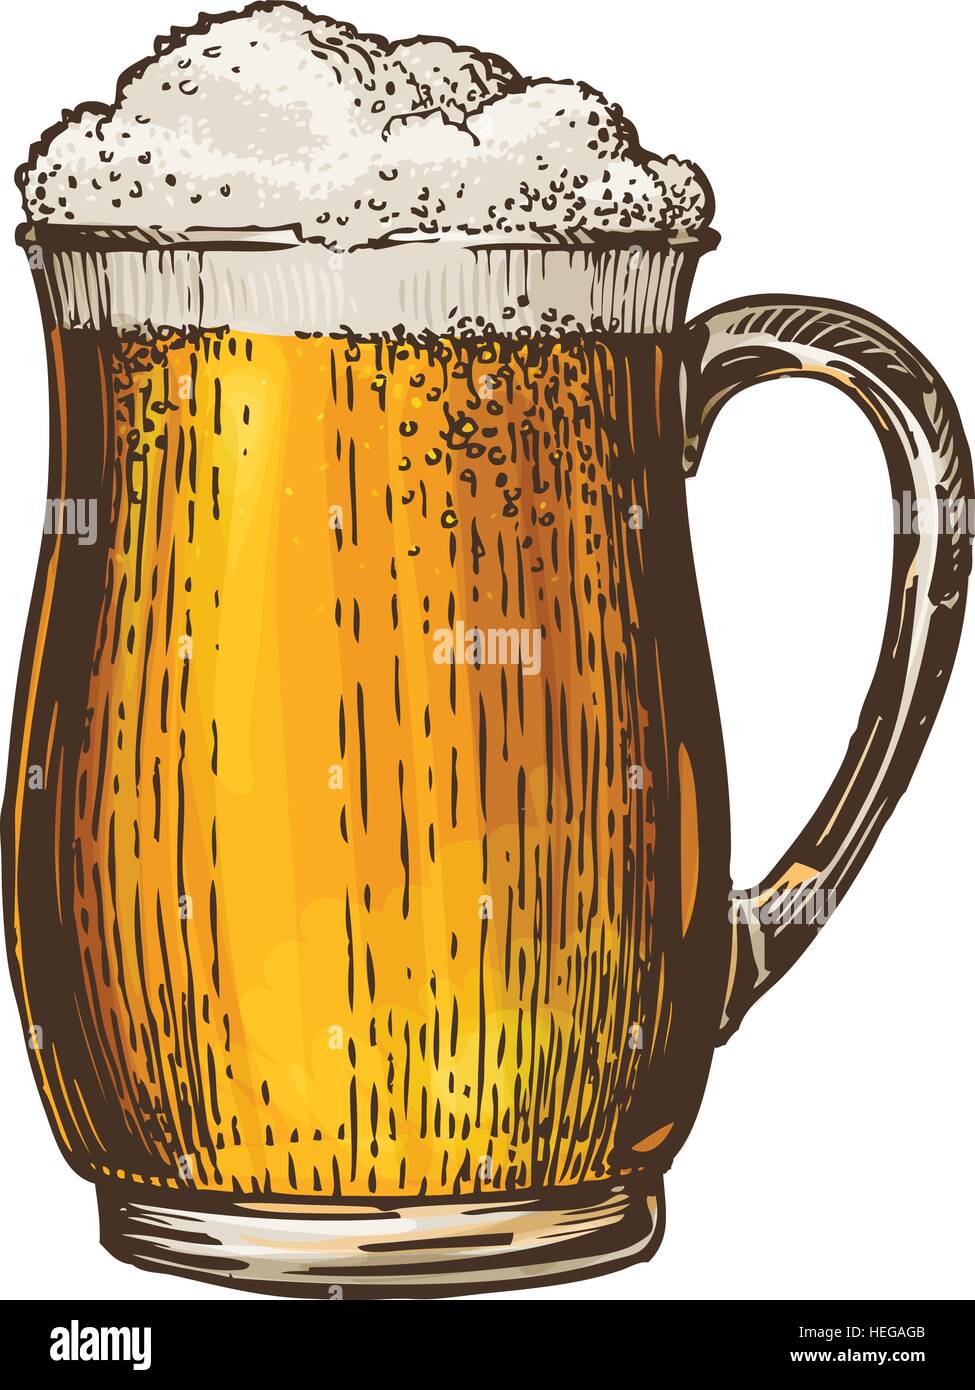 Bier, Ale, Lager. Element der Speisekarte Restaurant oder Pub. Vektor-illustration Stock Vektor